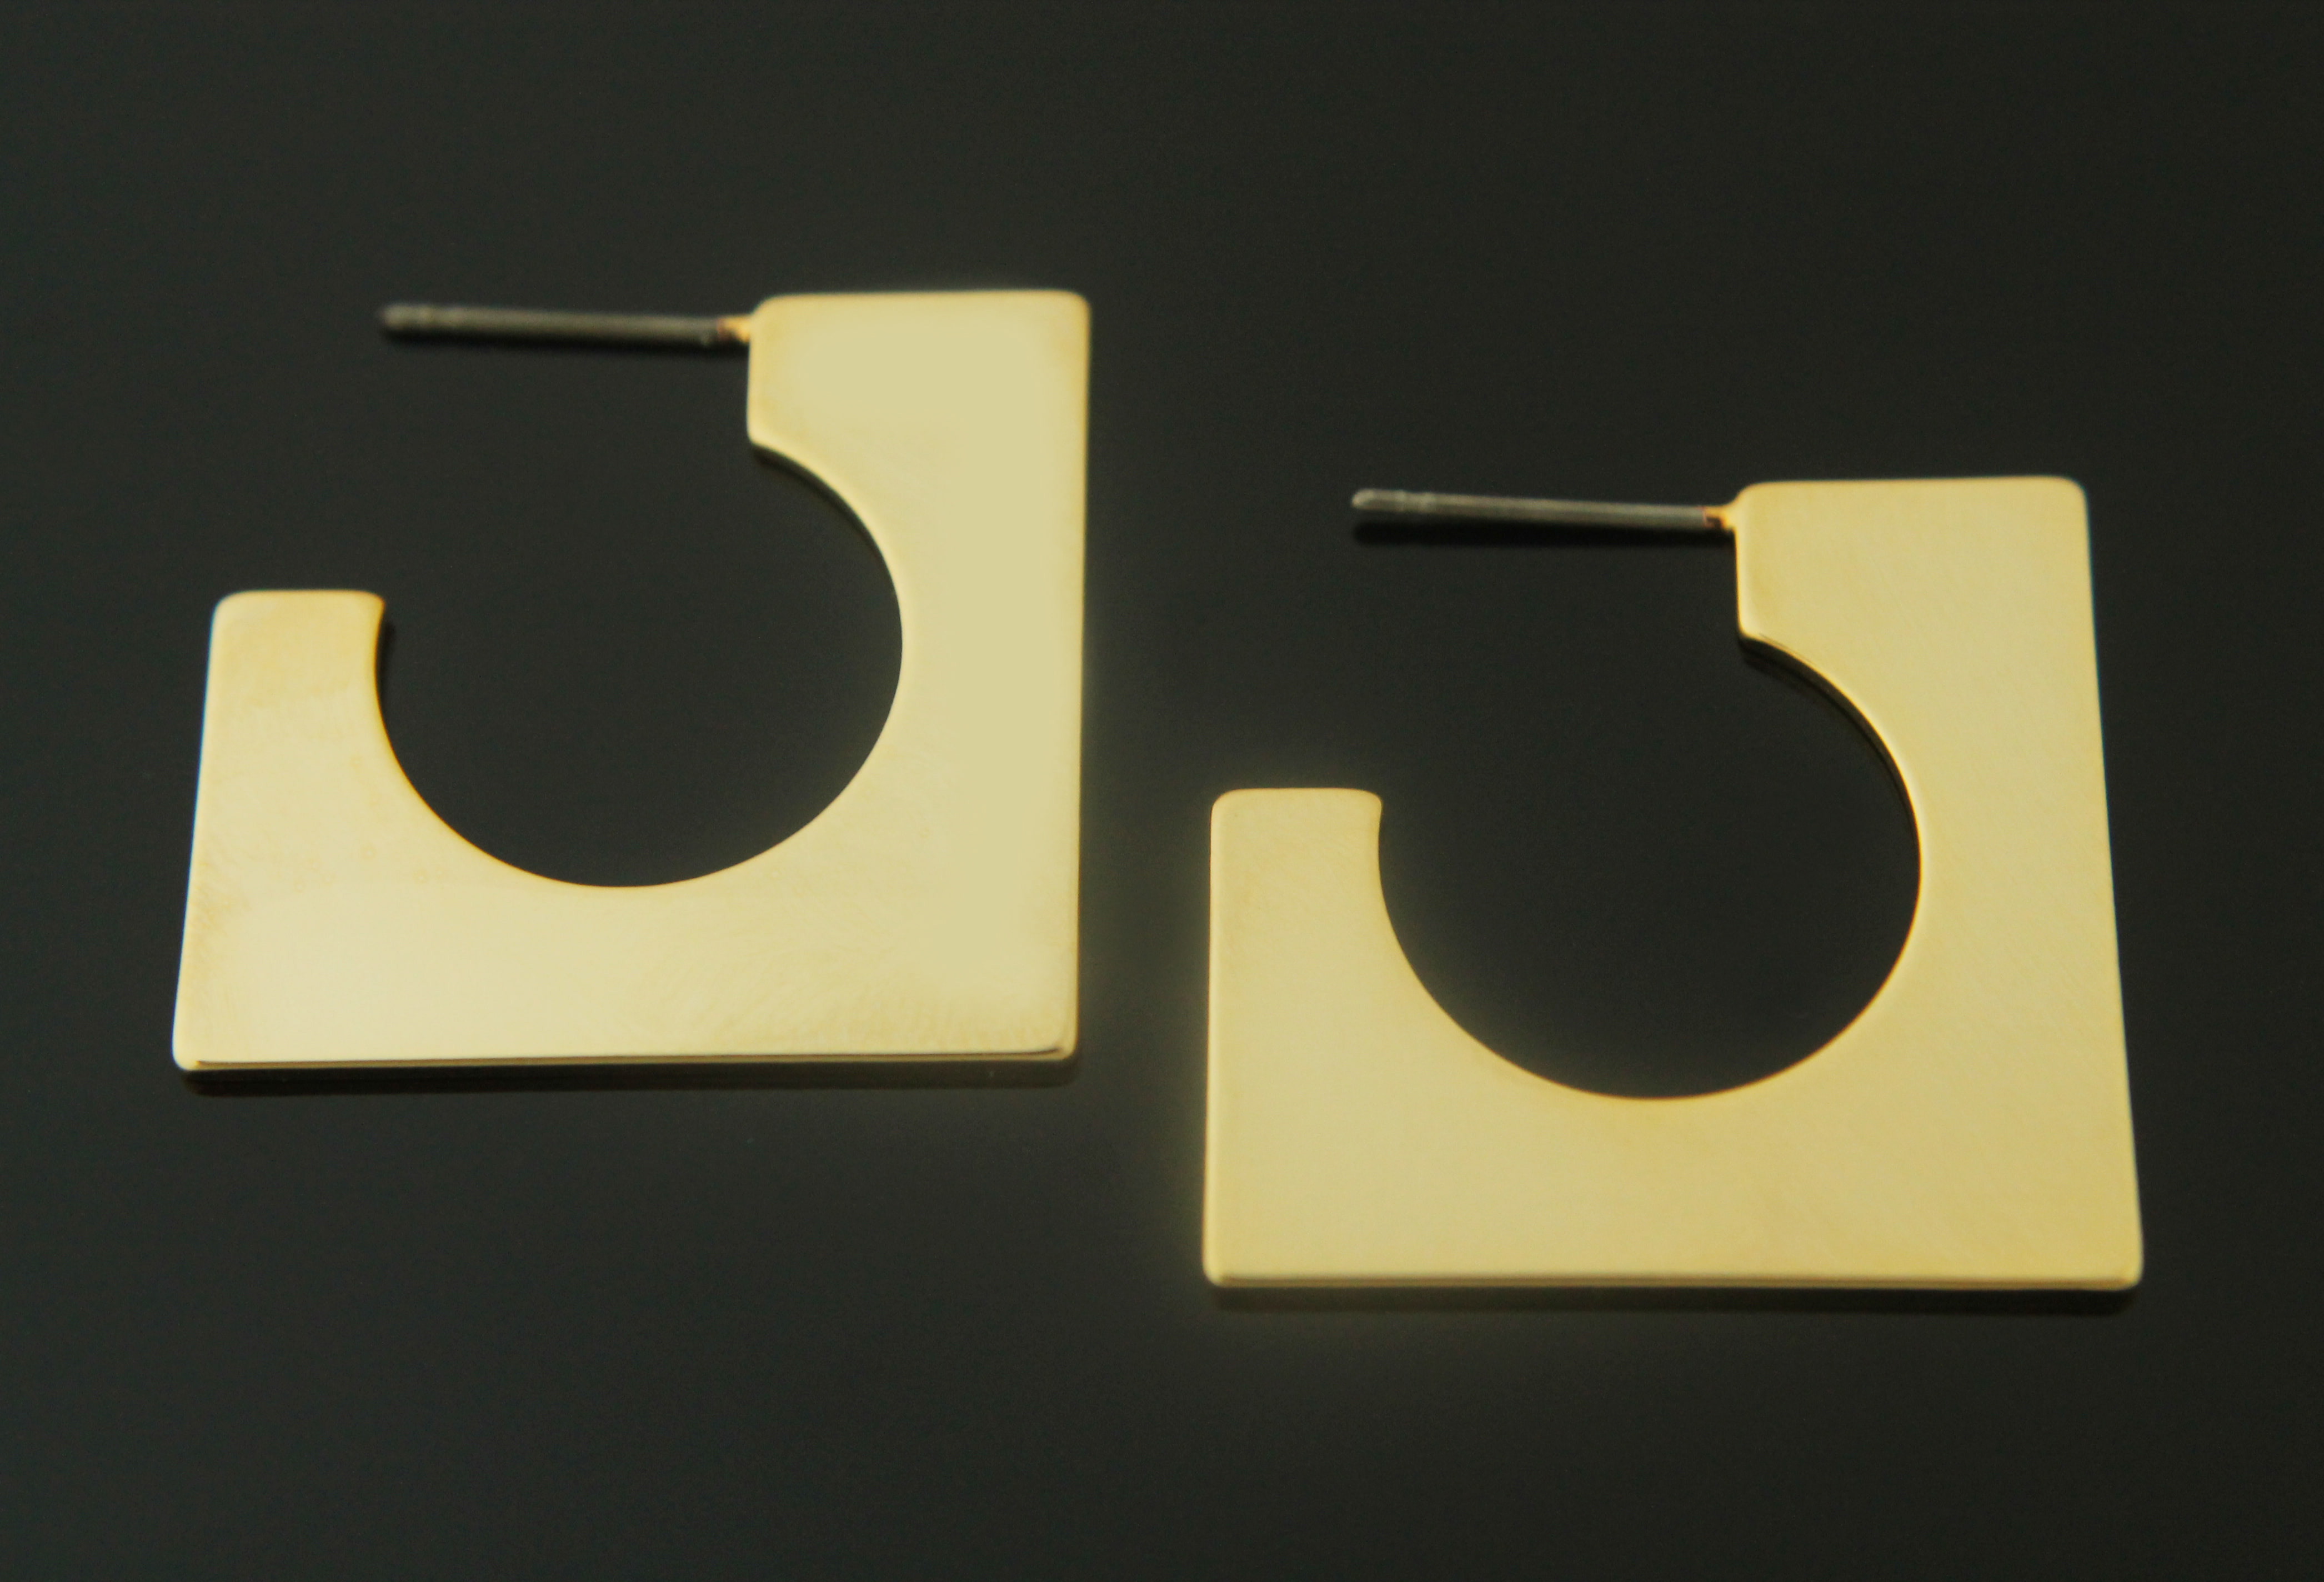 정사각 위에 라운드 이어링, S98-R3, 2개 (1쌍), 골드도금, 무니켈, 스테인레스스틸 포스트, 25mm, 두께 1mm